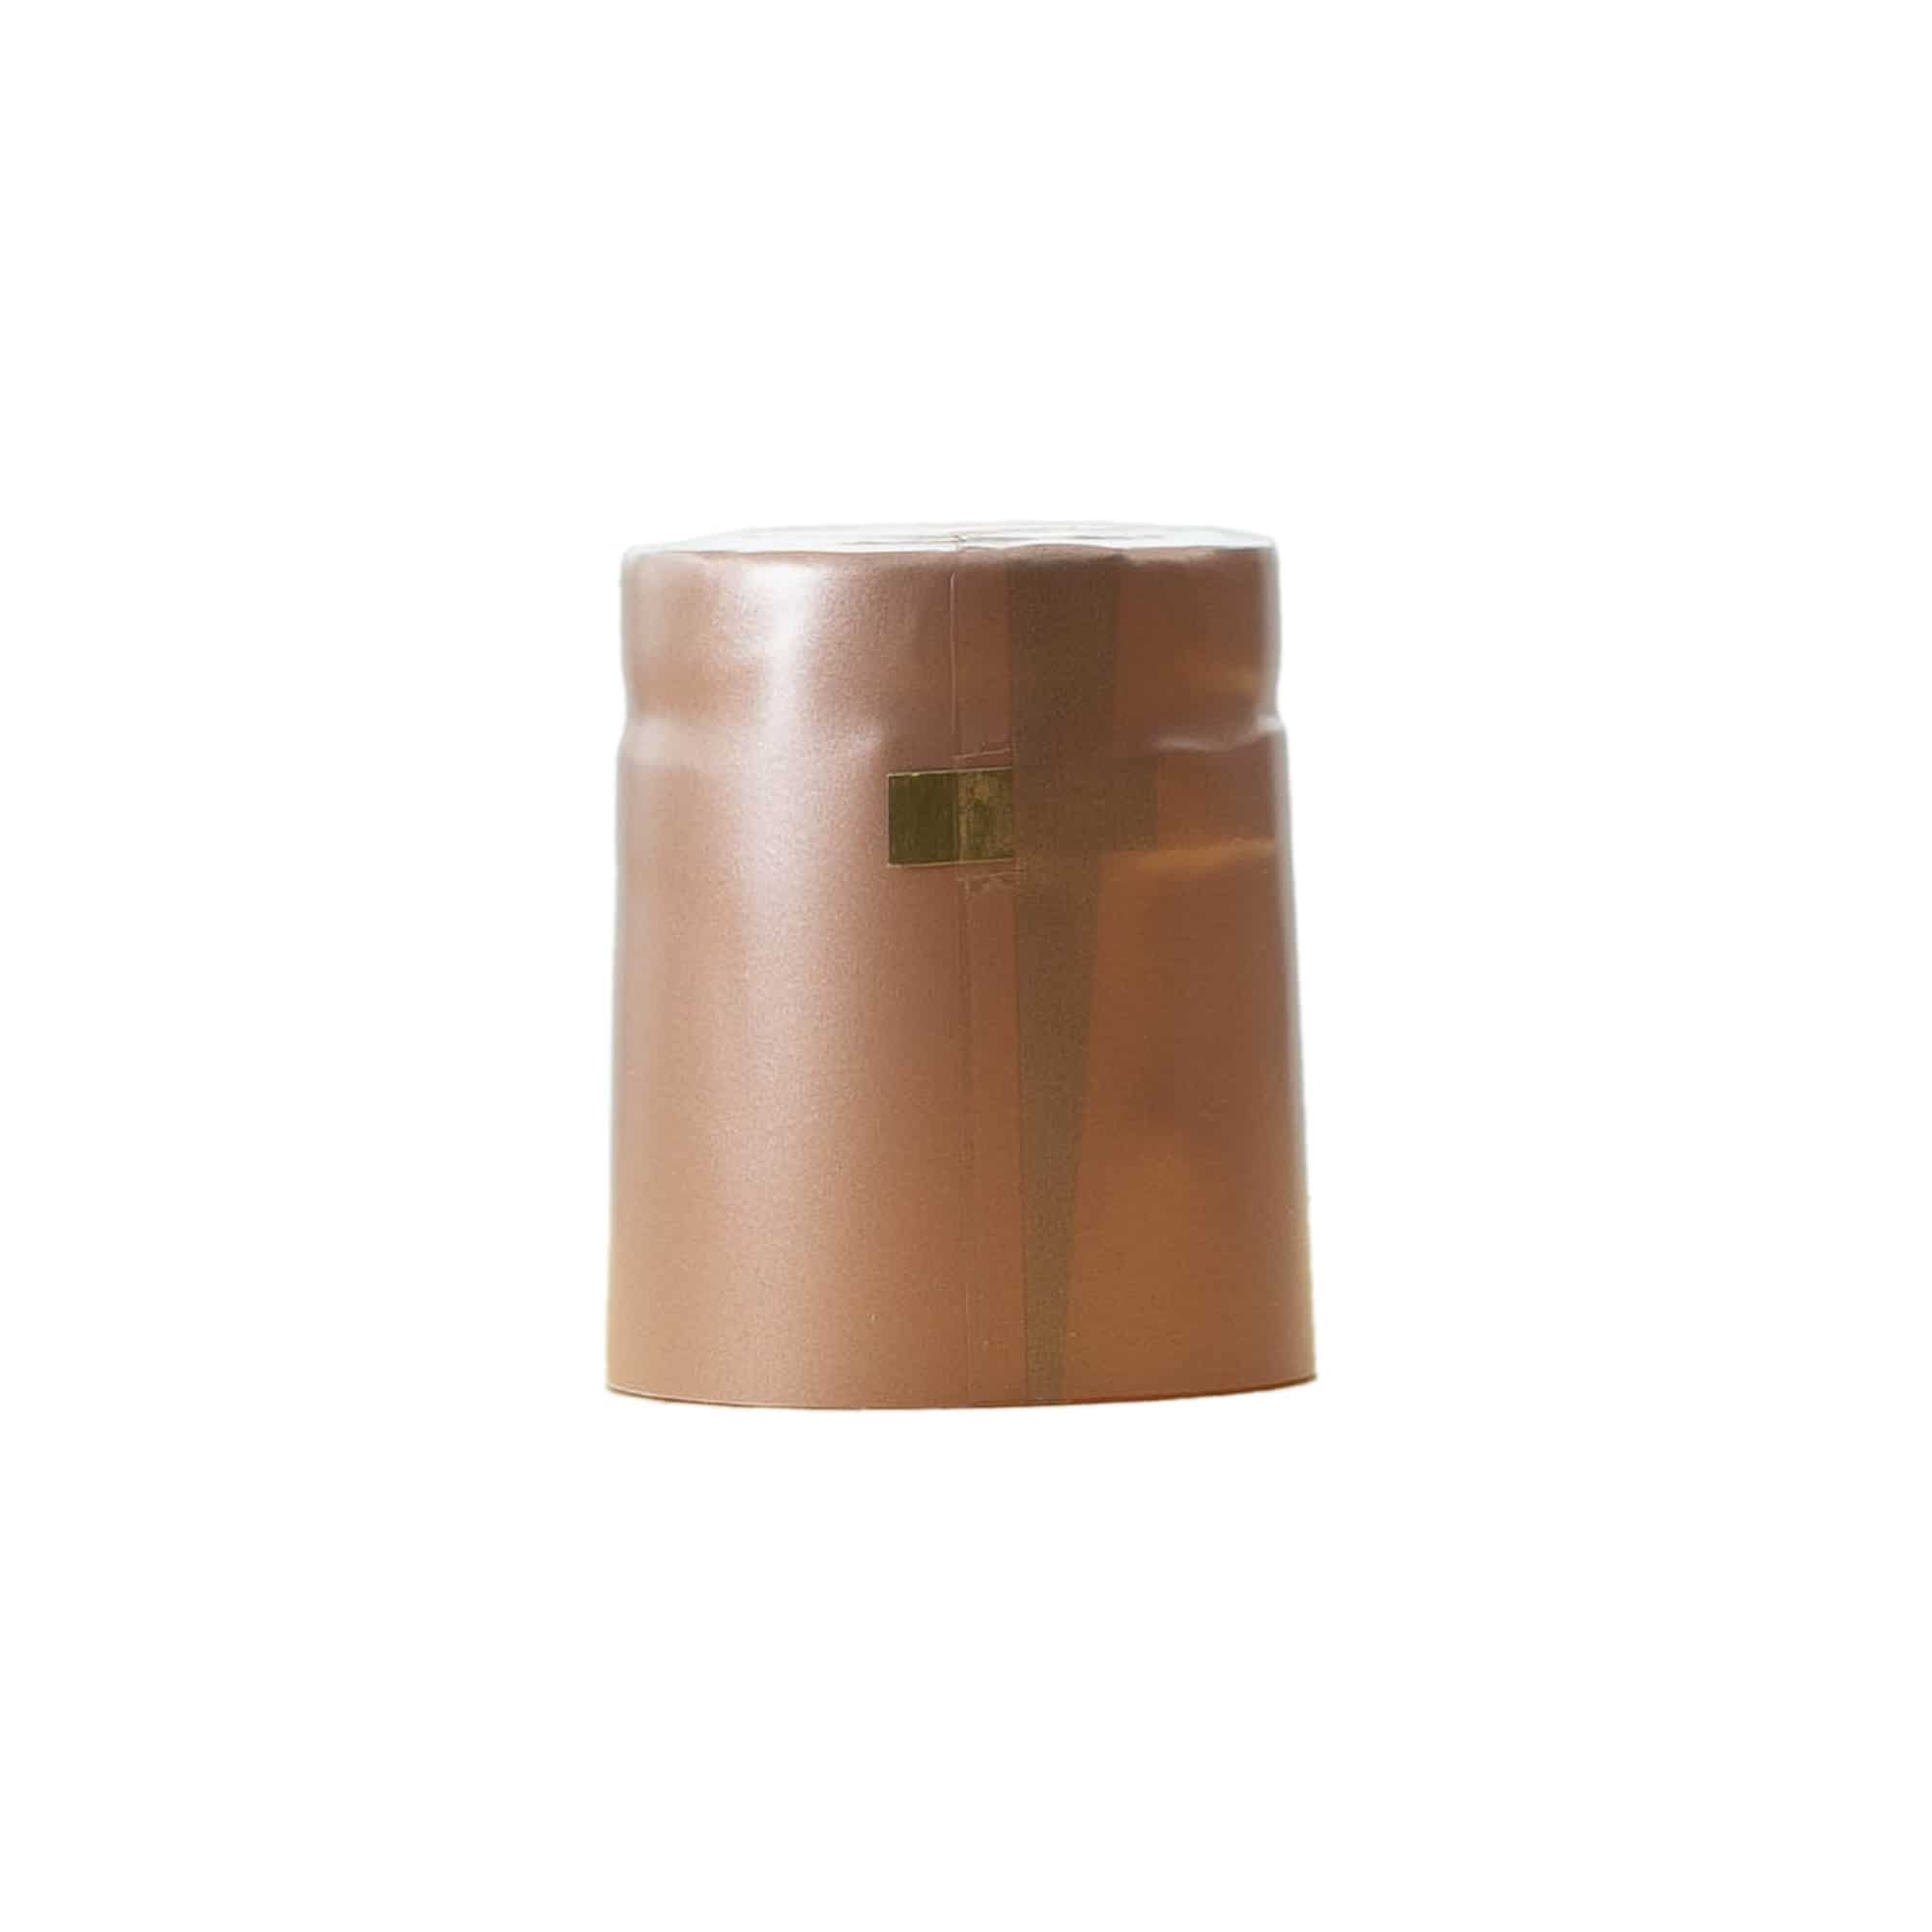 Capsule thermo-rétractable 32x41, plastique PVC, terracotta